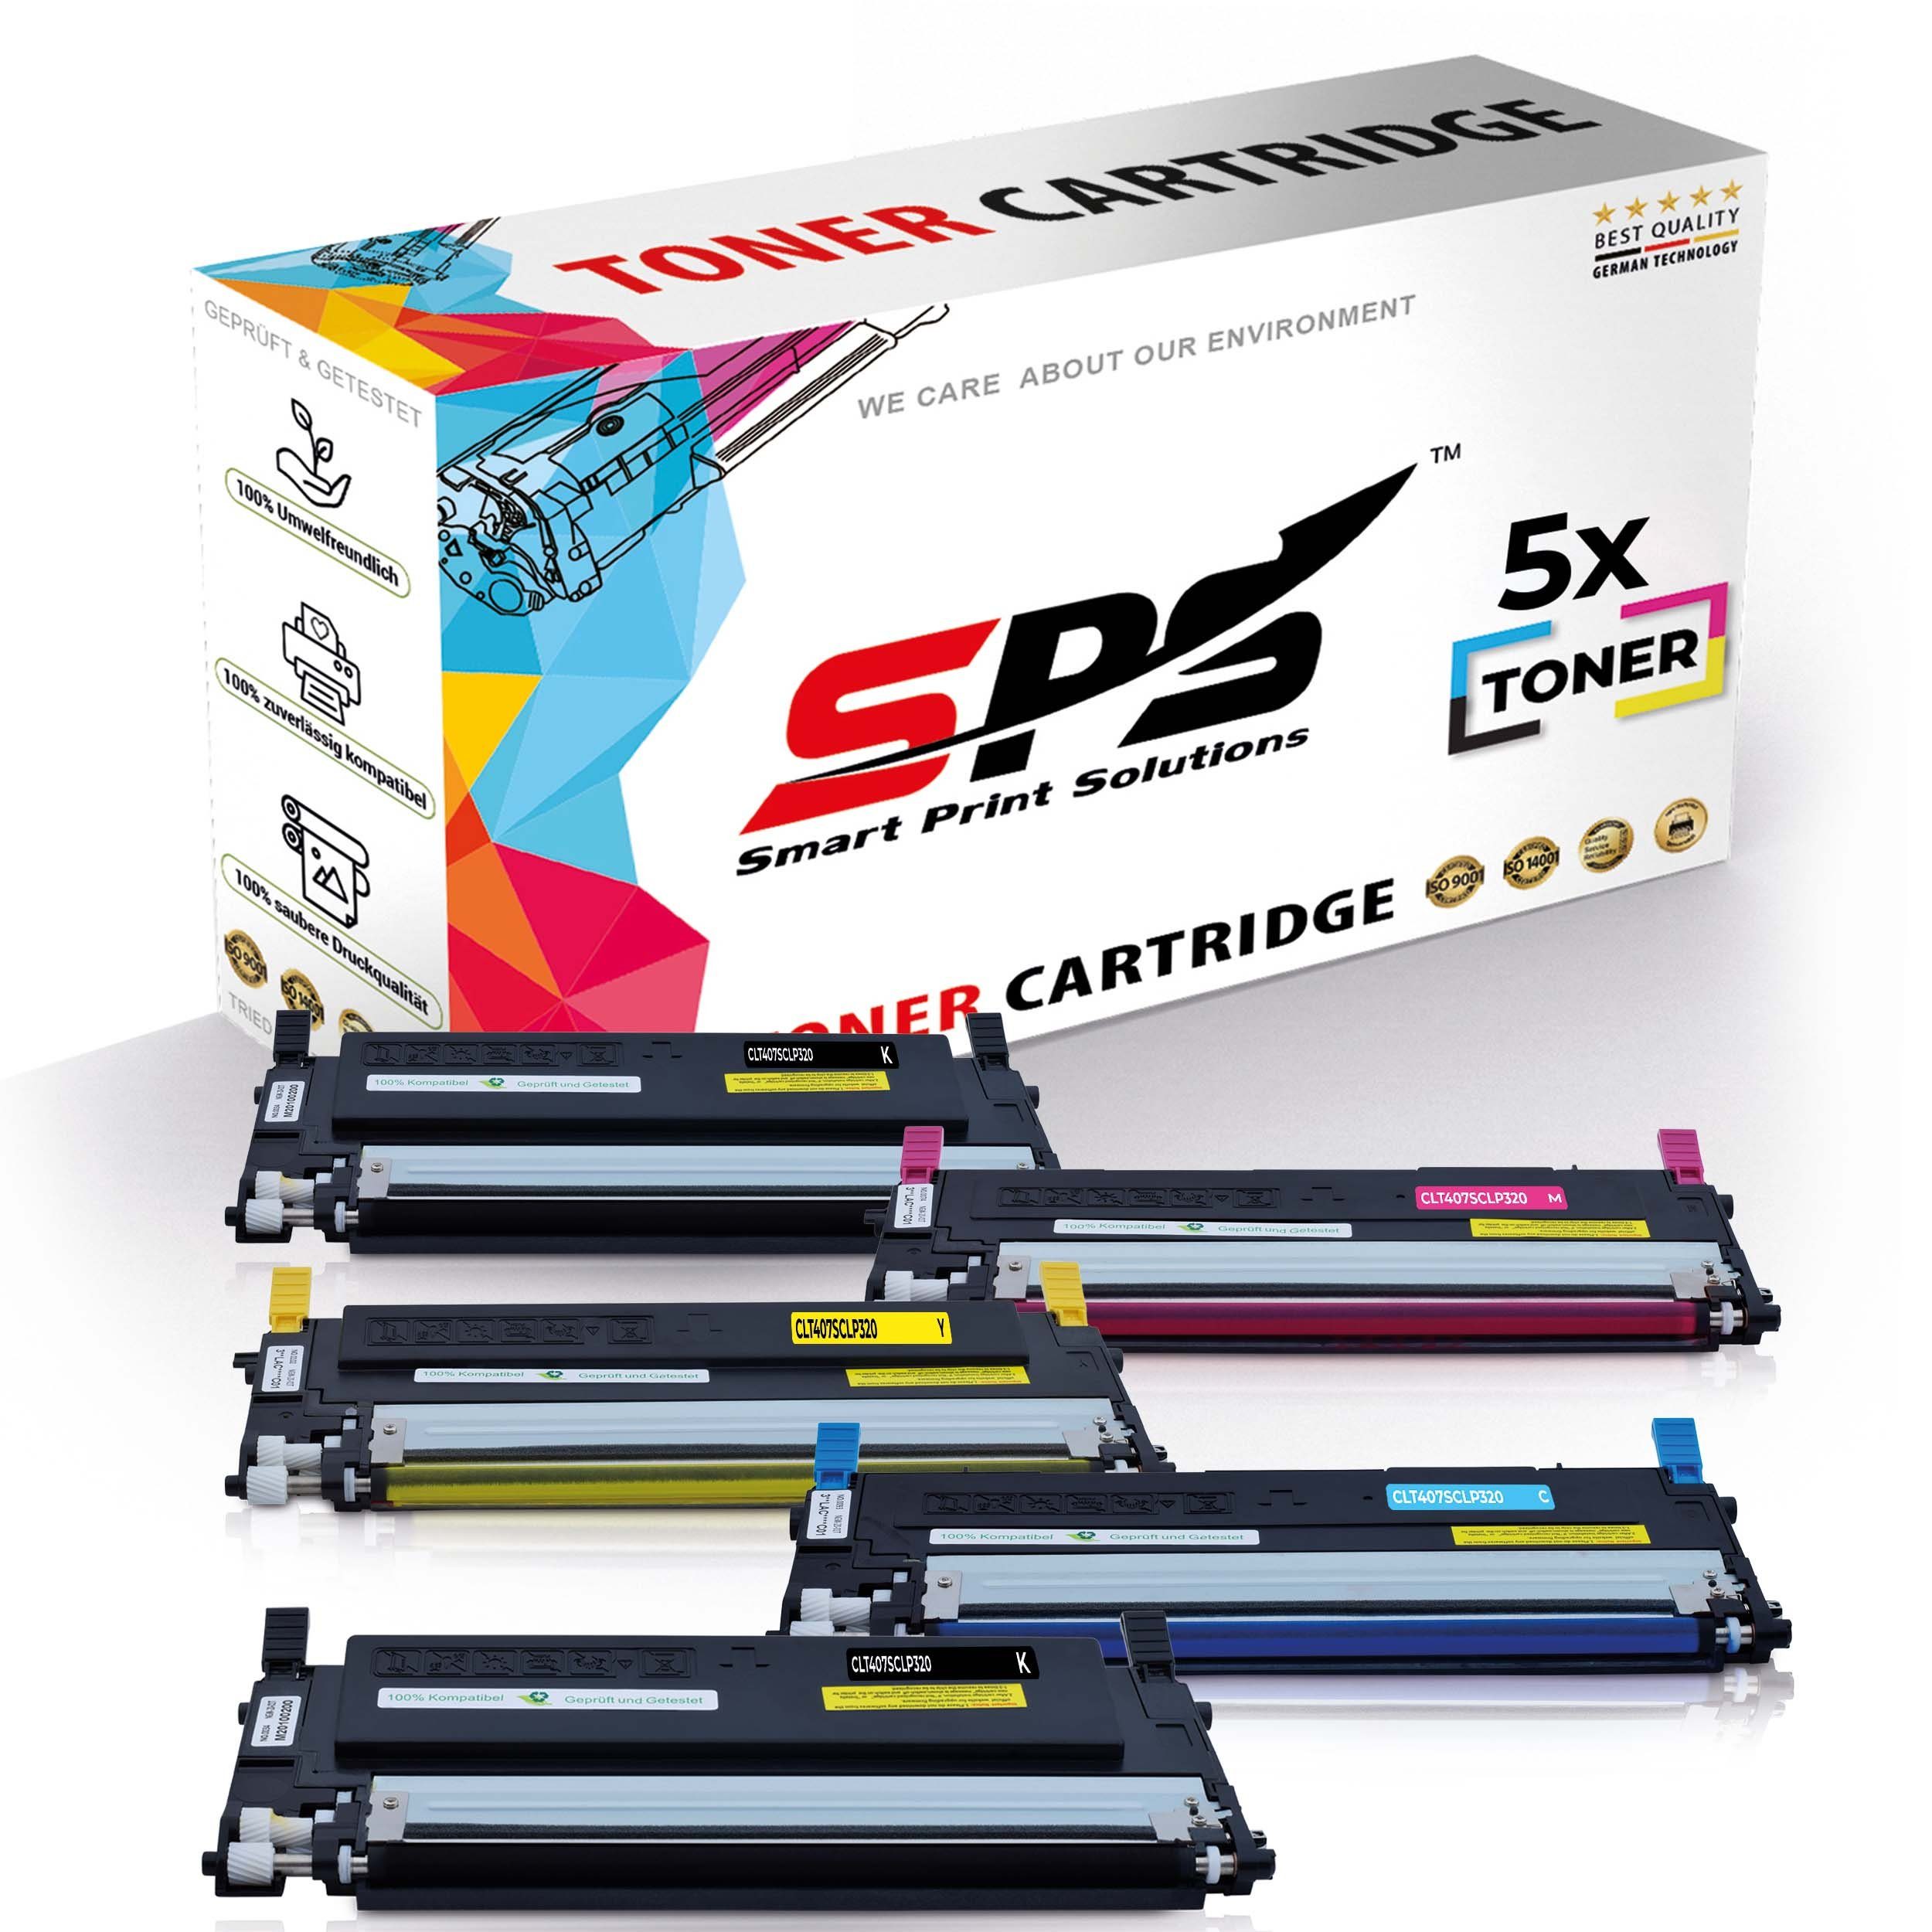 SPS Tonerkartusche Kompatibel für Samsung CLX-3185W C407 CLT-C407S, (5er Pack)